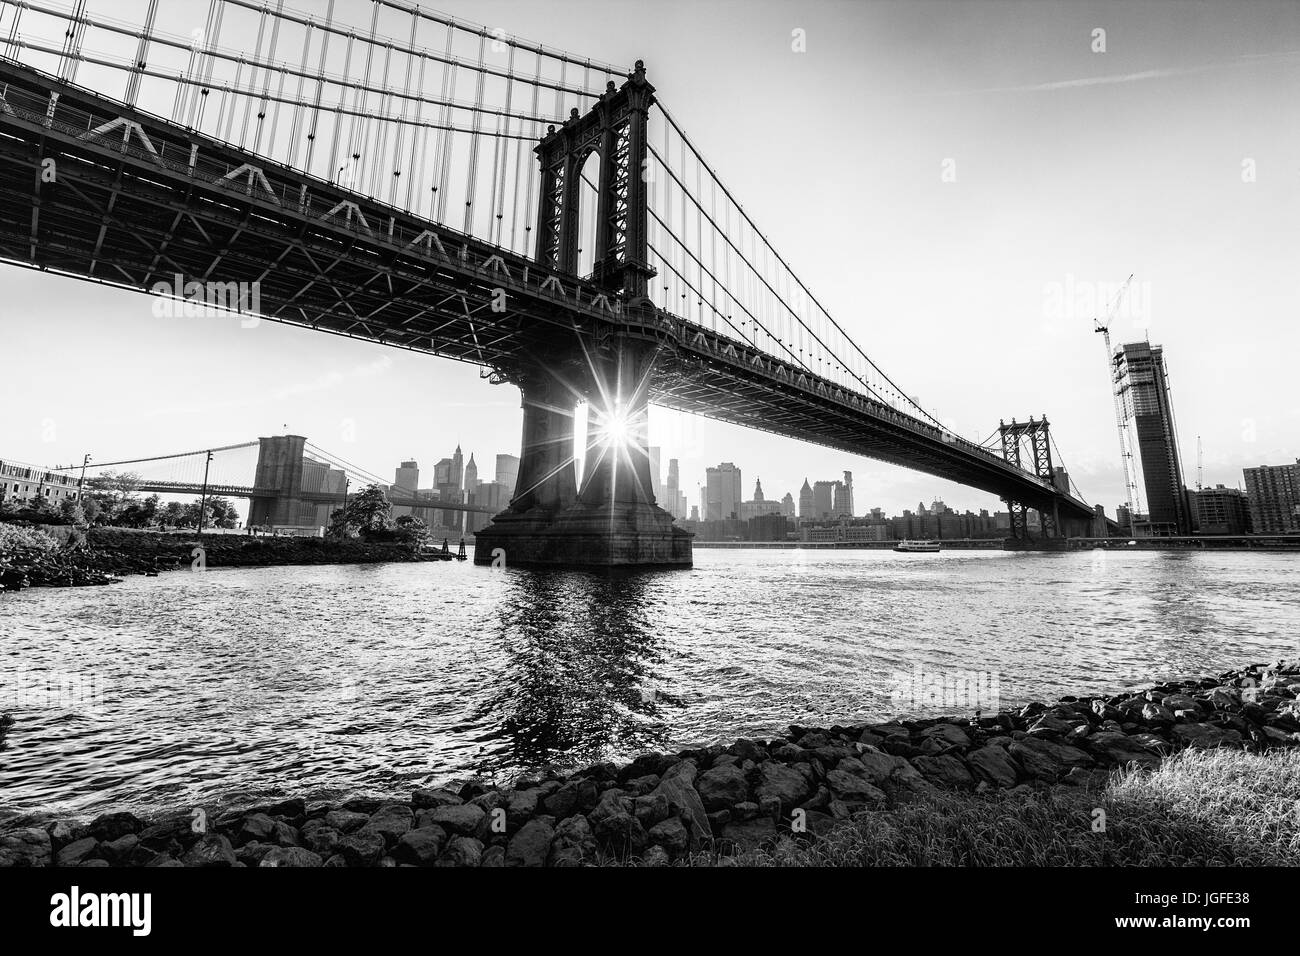 Manhattan Bridge taken from Brooklyn DUMBO, New York City Stock Photo